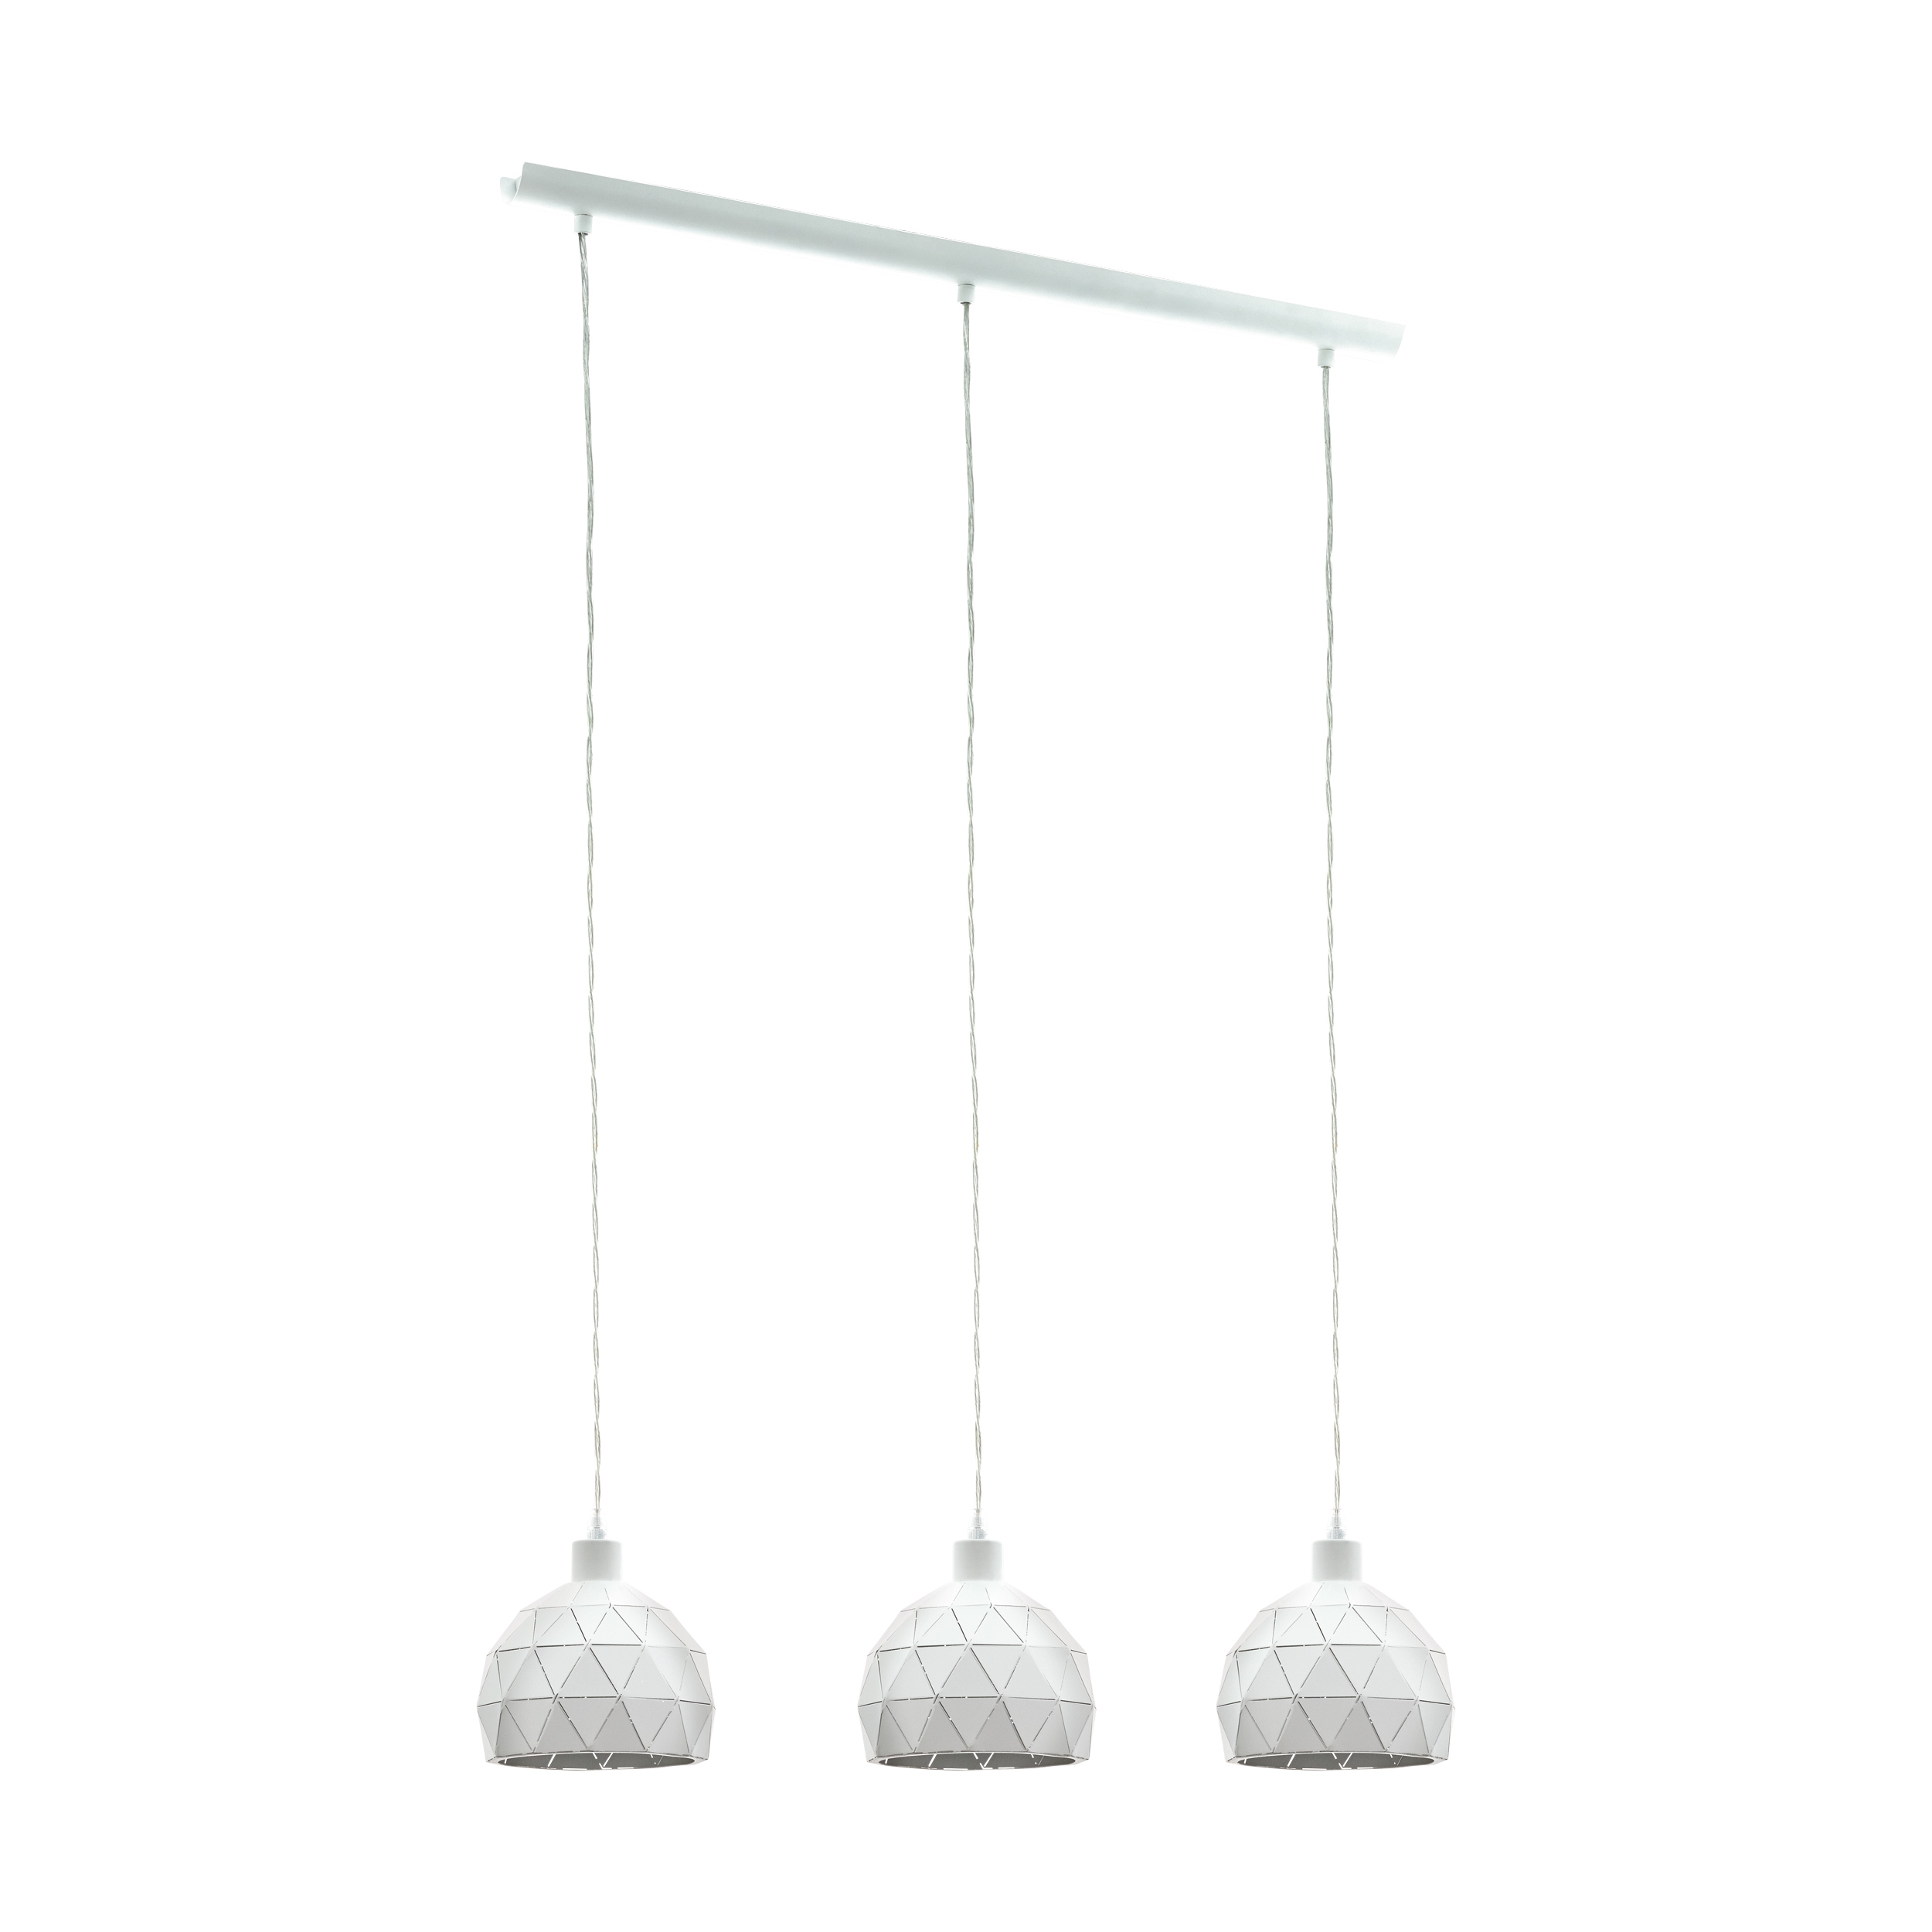 ROCCAFORTE chandelier lamp white EGLO 97857